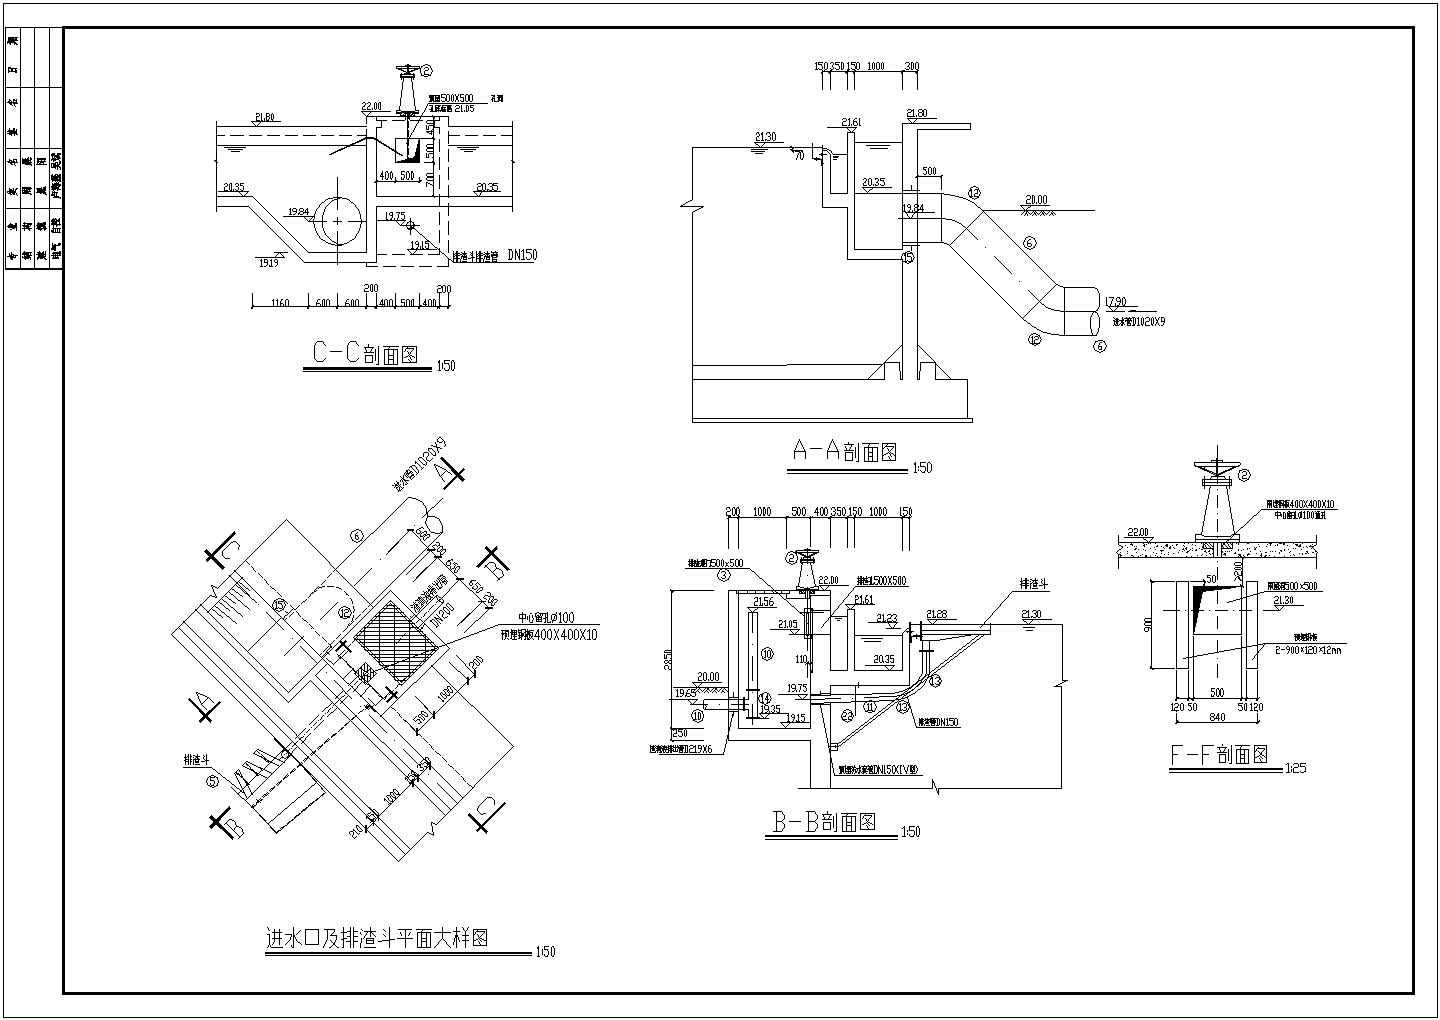 北京市某A2O工艺污水处理厂图纸二沉池CAD给排水构造设计图